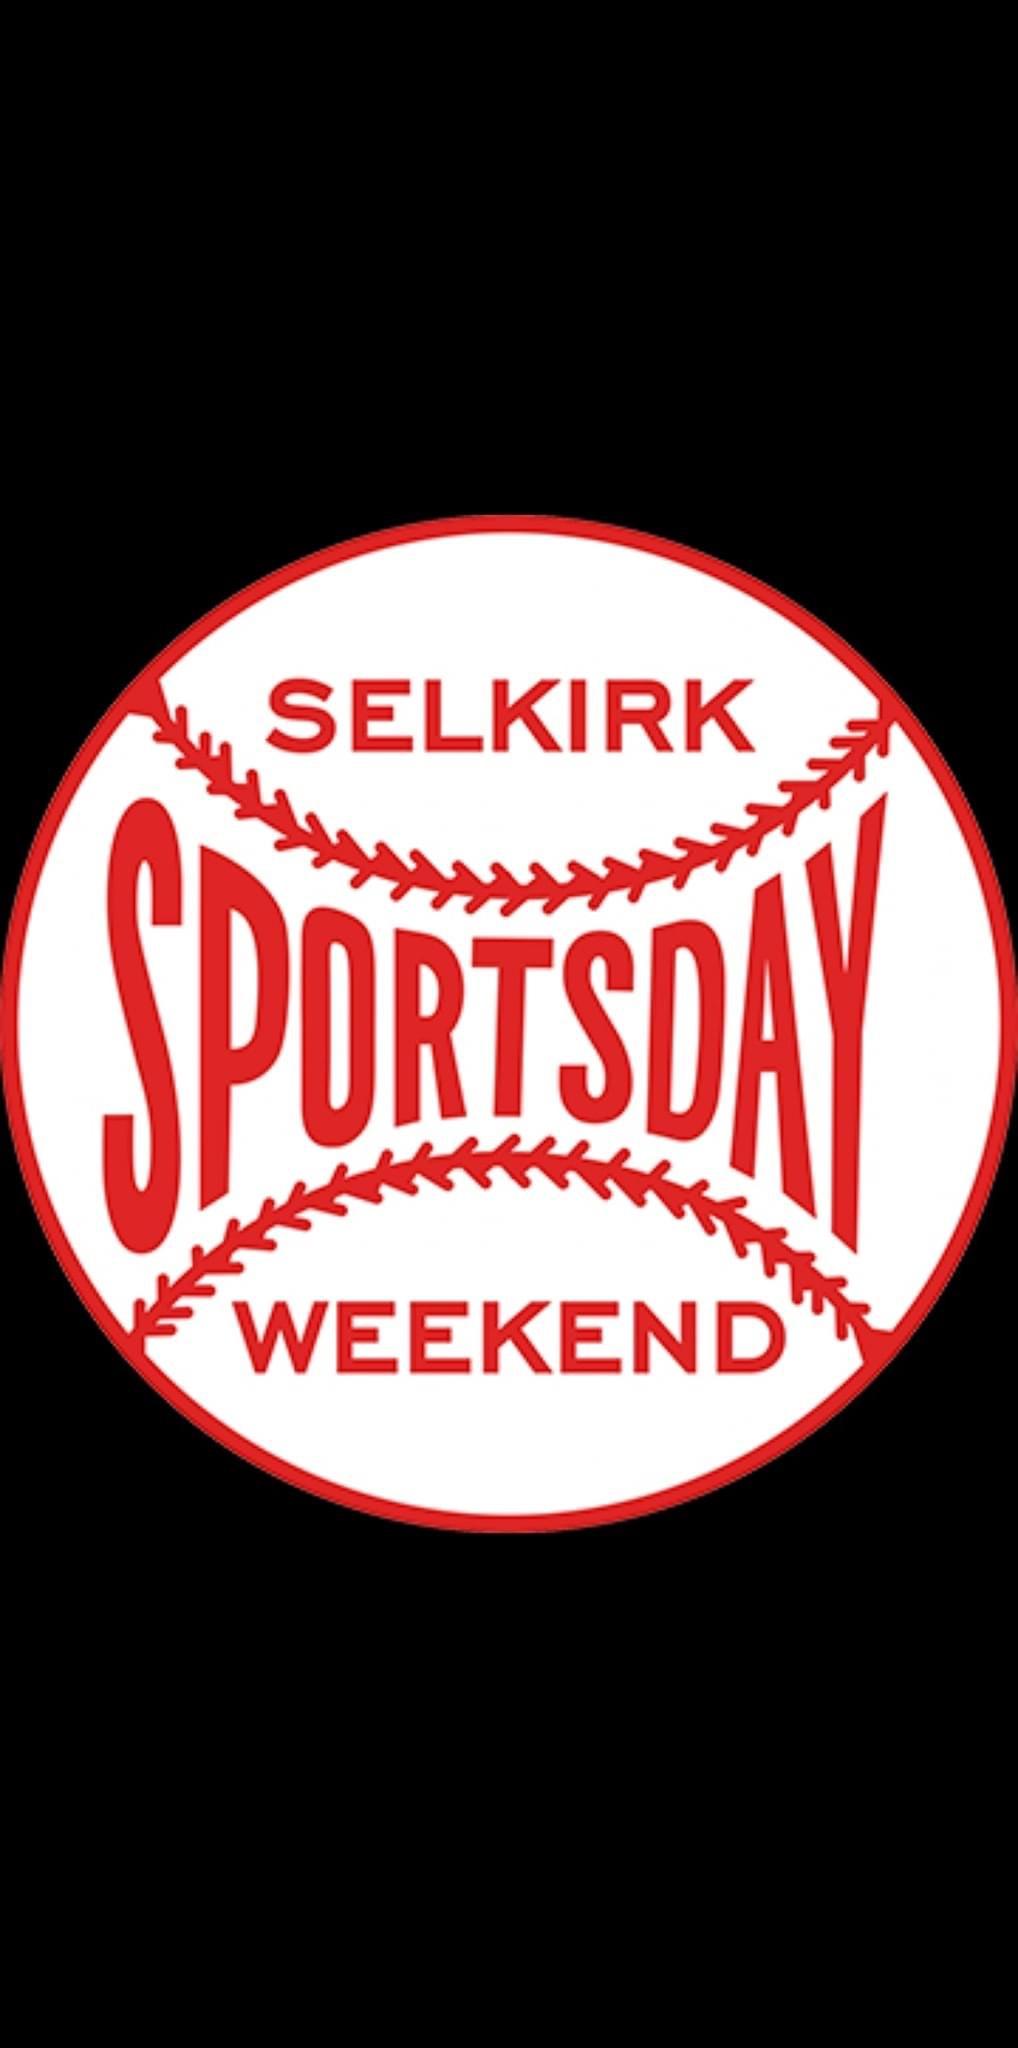 Selkirk Sportsday Weekend